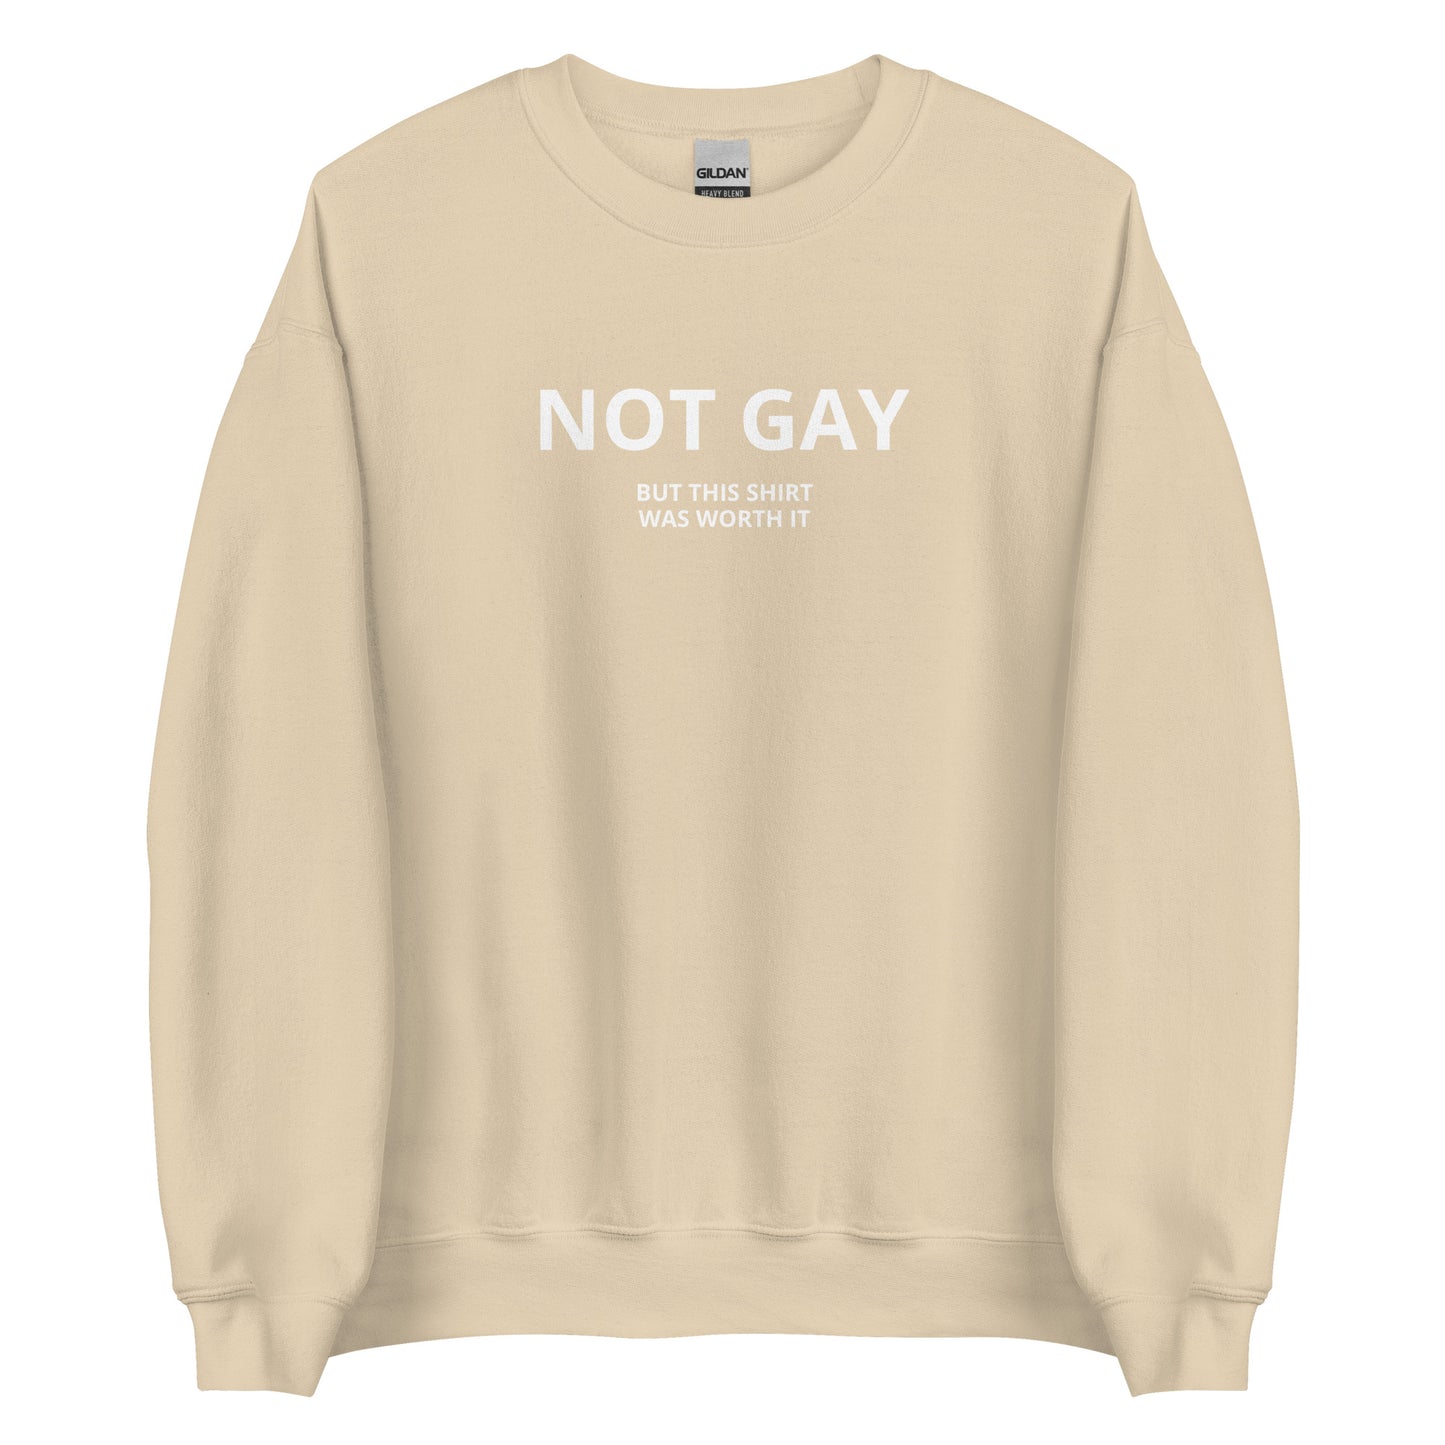 NOT GAY